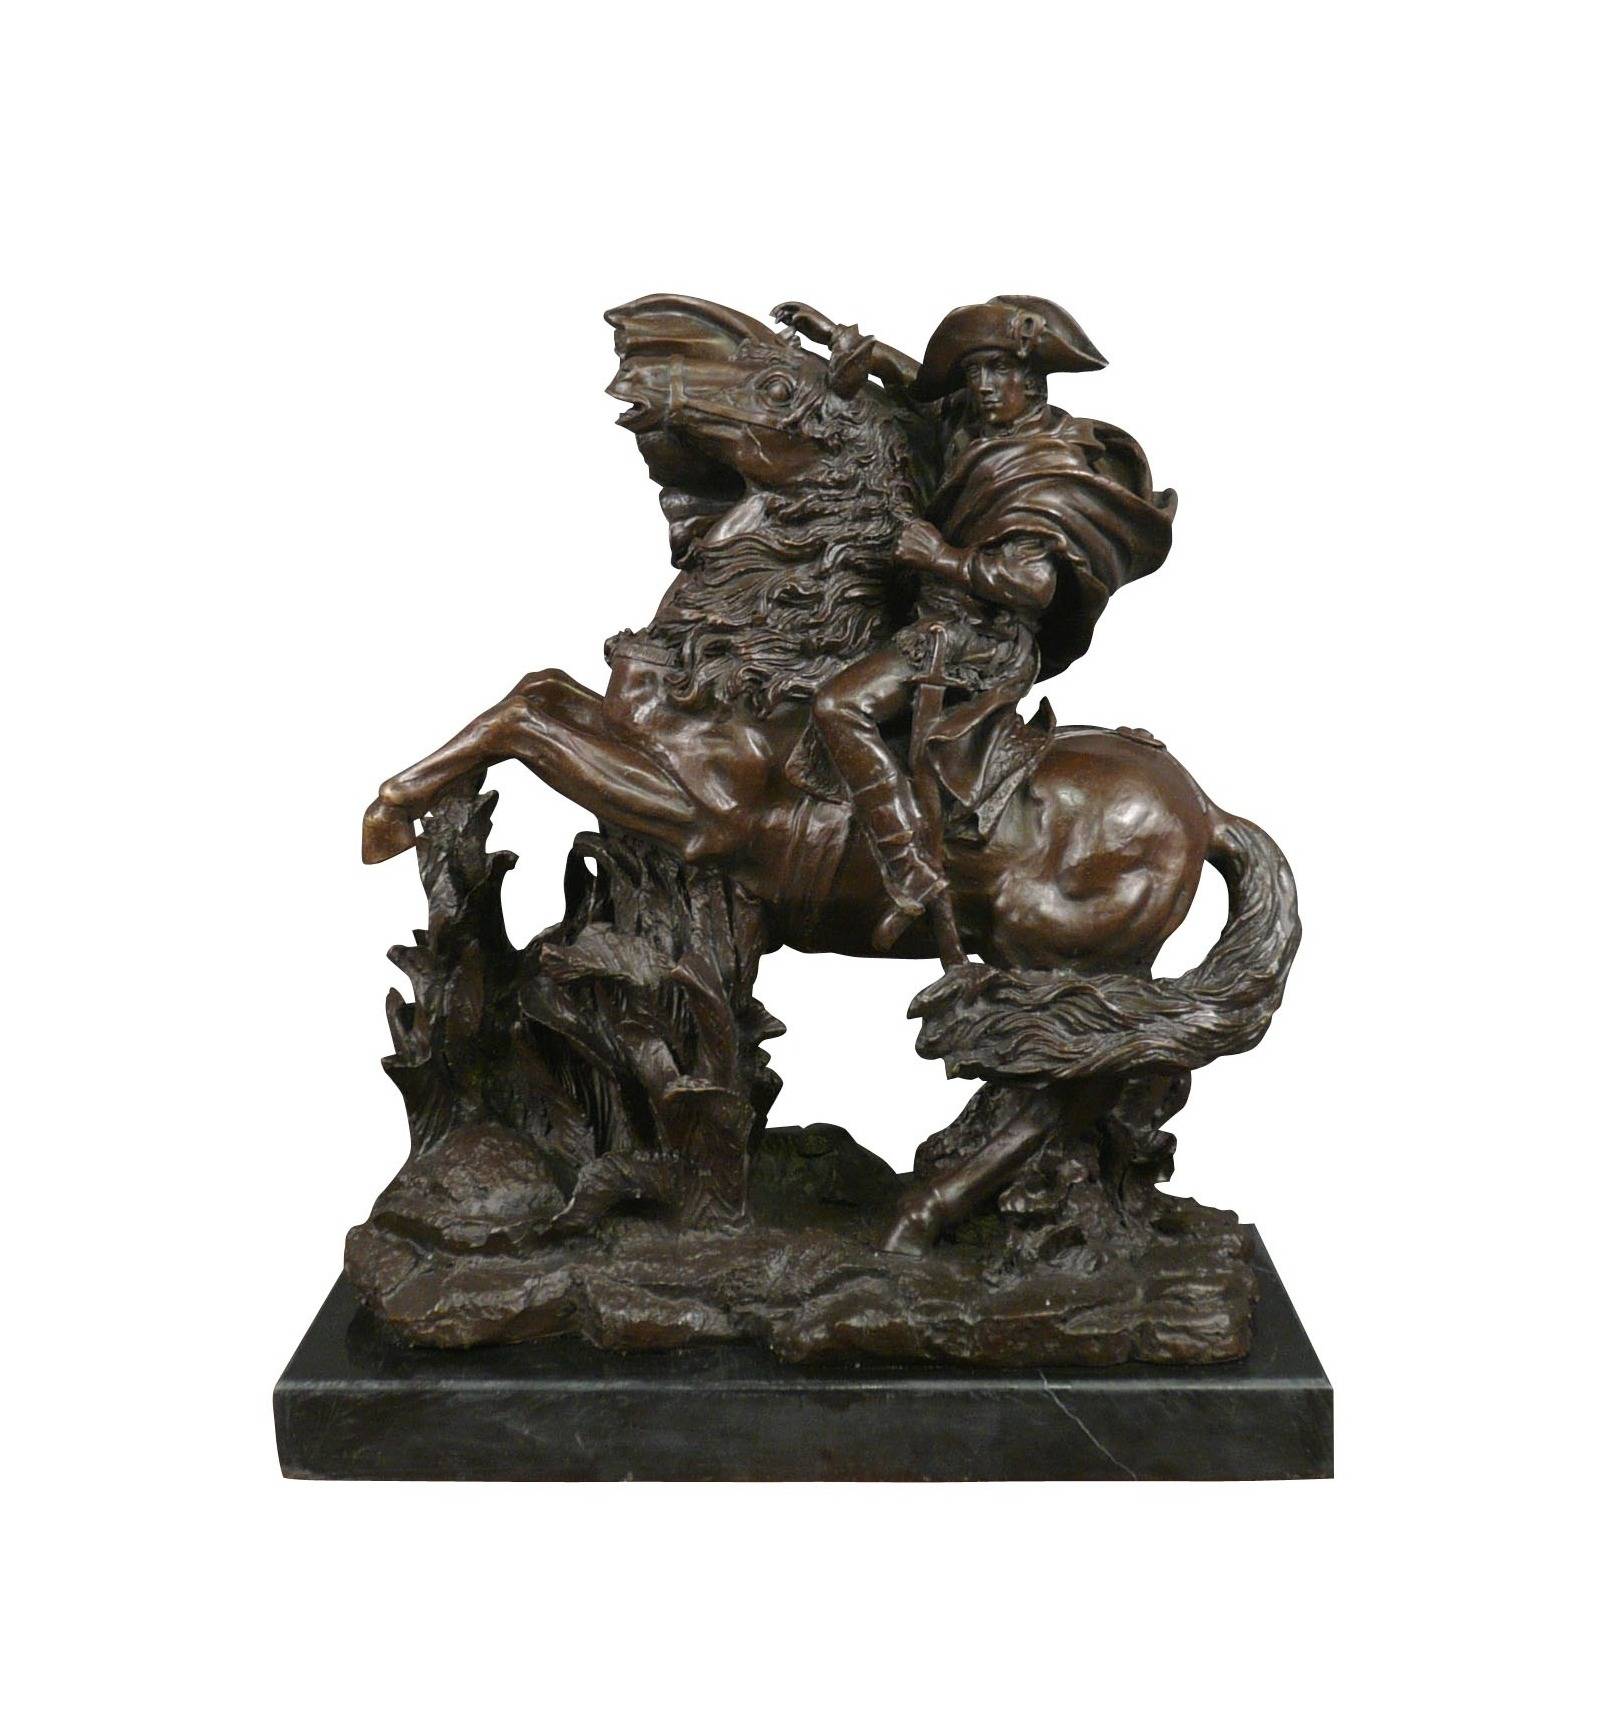 Masa dekorasyon döküm metal zanaat bronz Nepoleon heykeli satılık